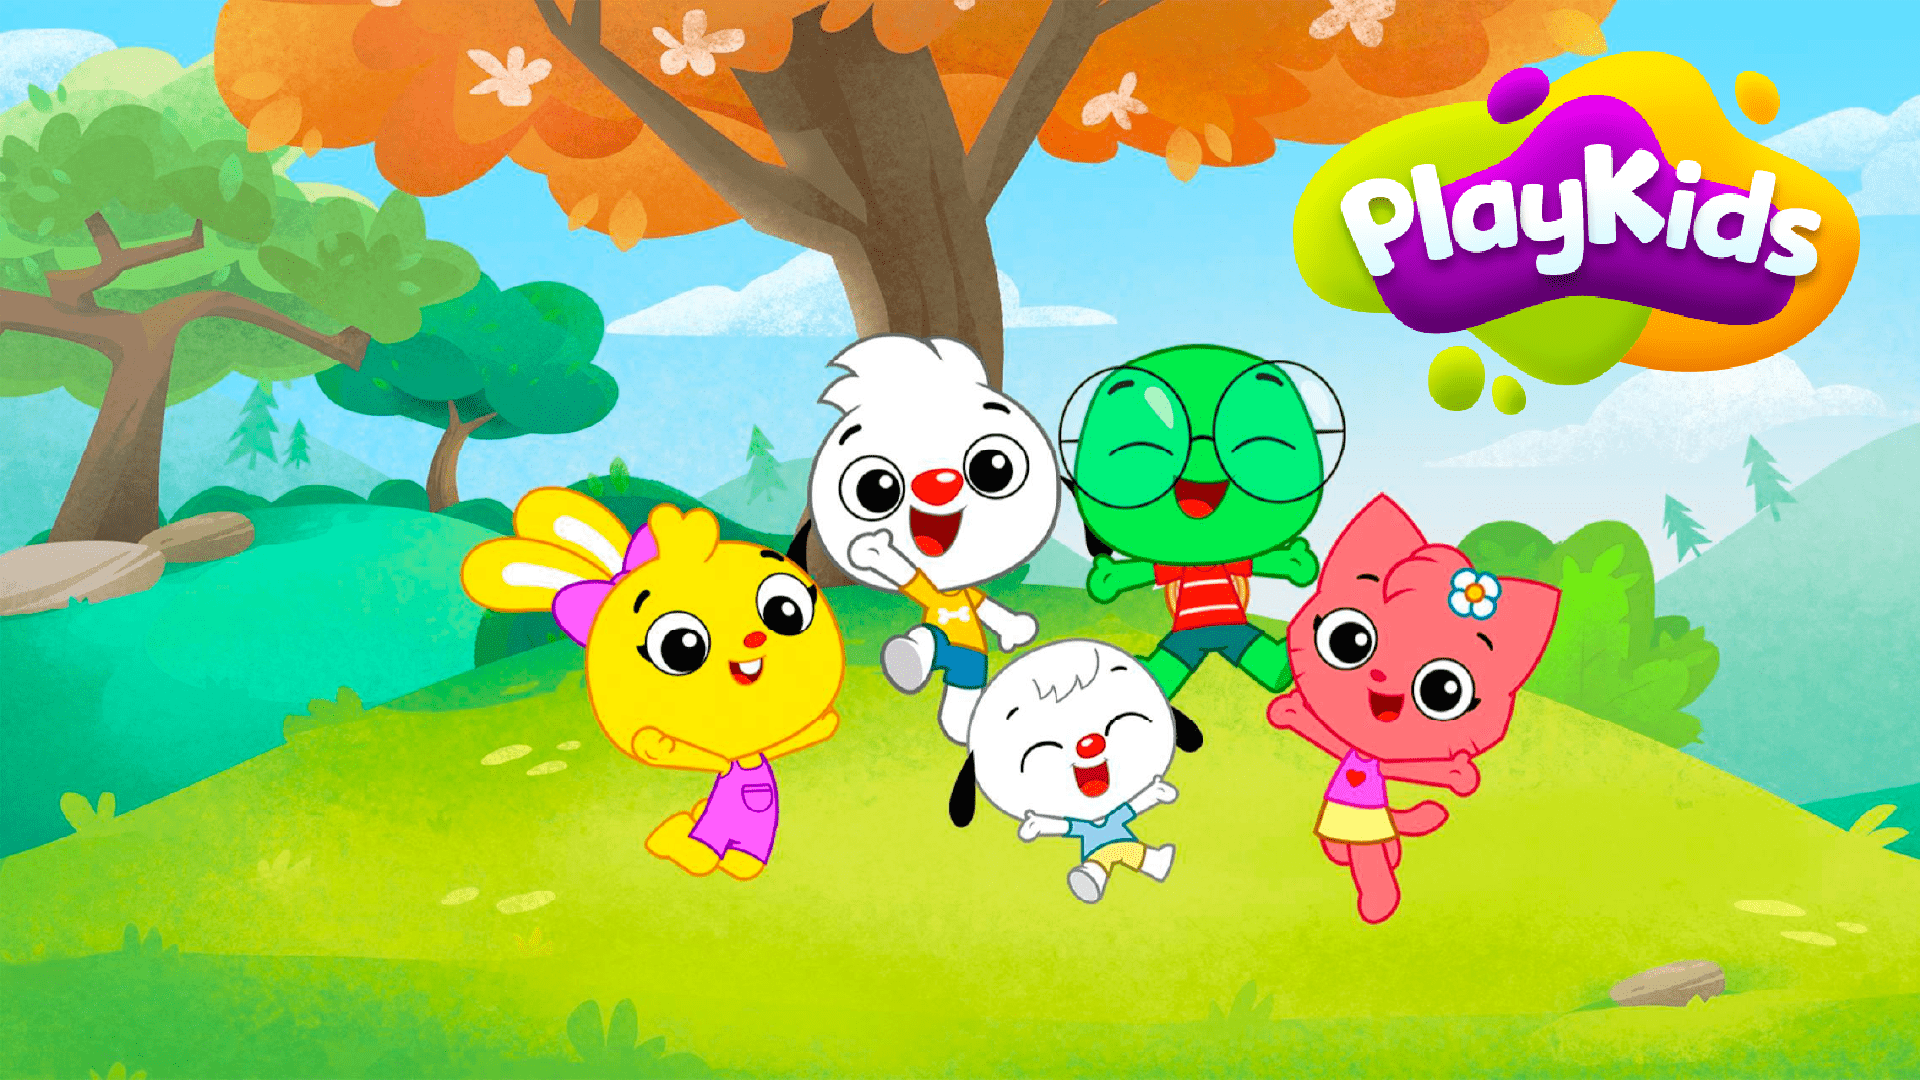  PlayKids: aprendizado e diversão para seu filho 